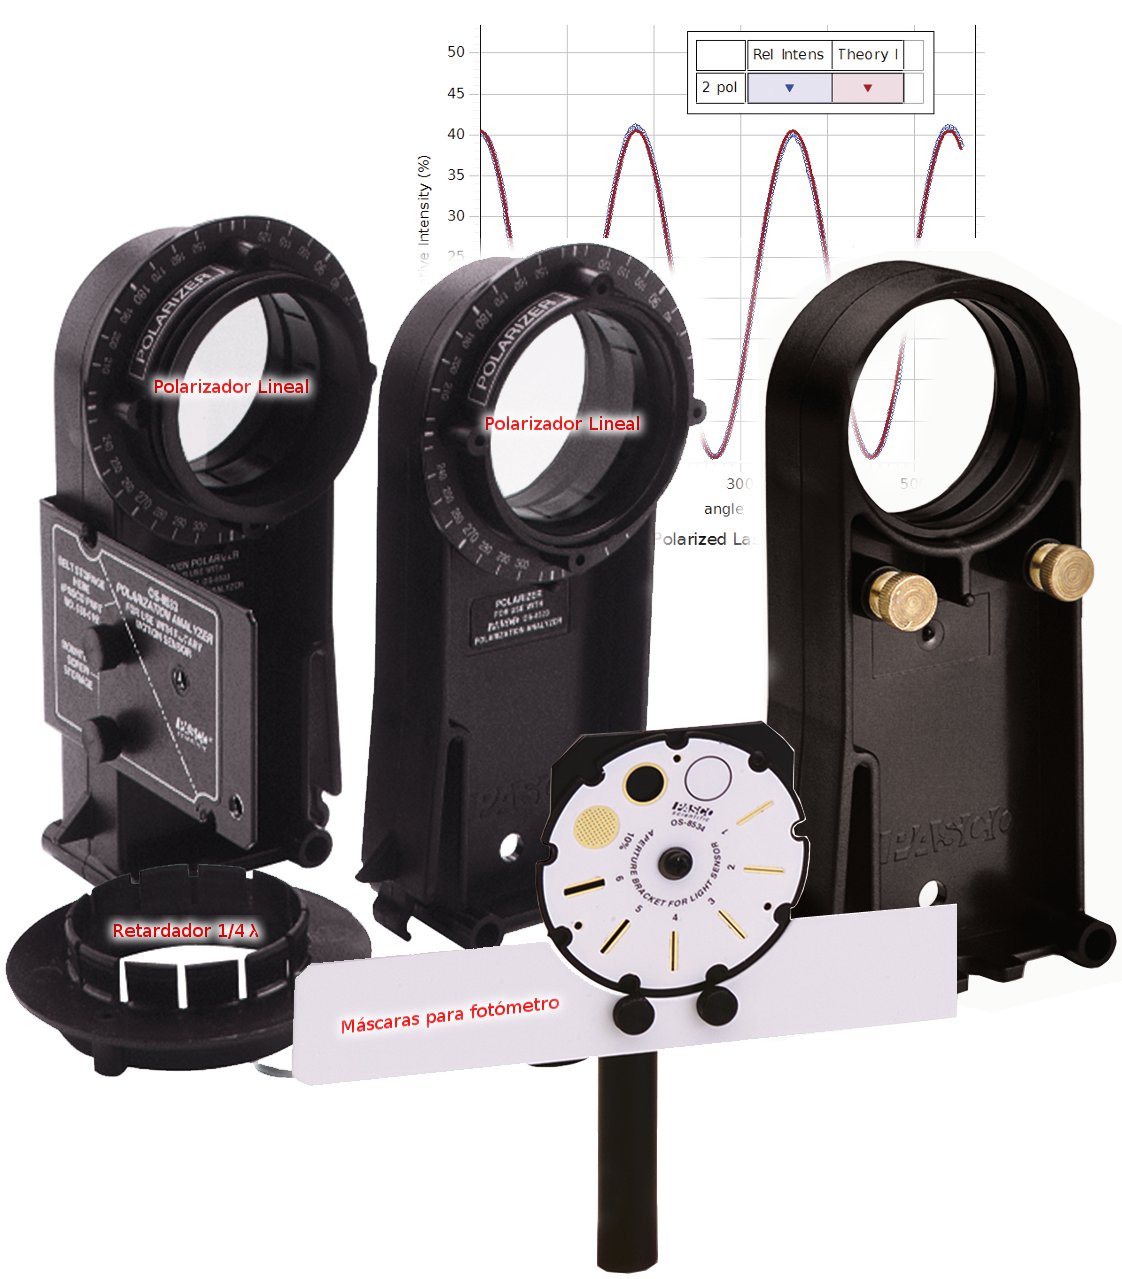 Analizador de polarización, c/2 polarizadores, retardador 1/4 lamda, diafragmas de apertura y soportes para banco óptico OS-8533A